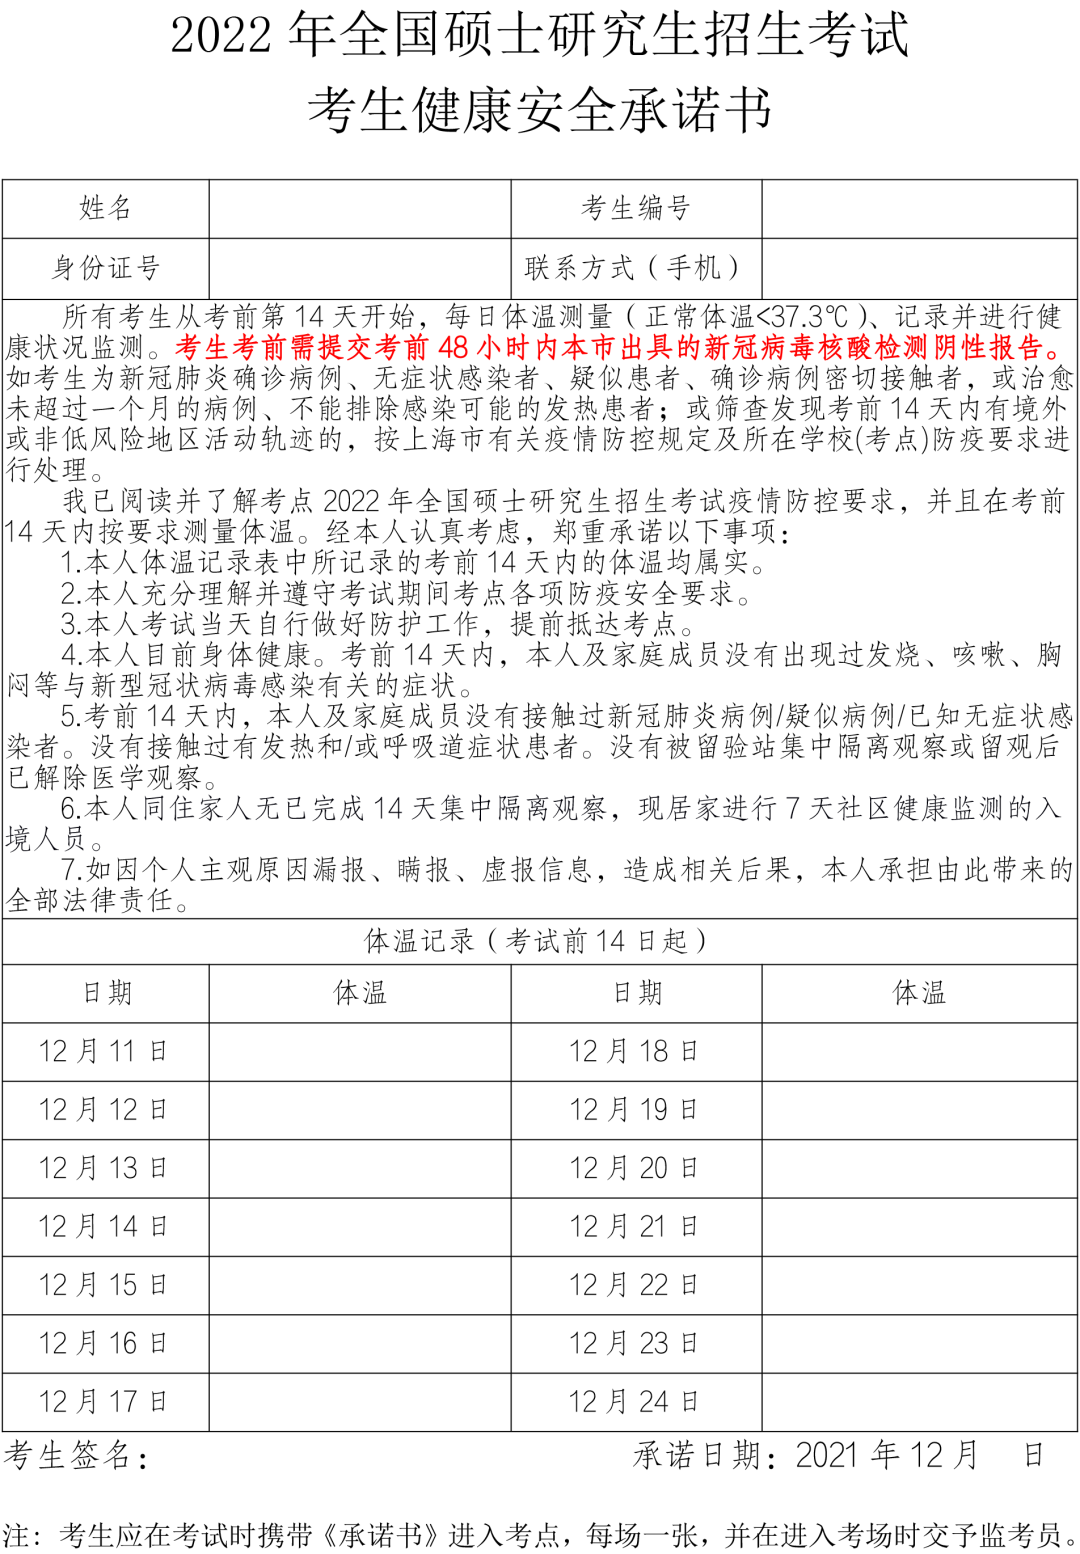 上海：研究生考试前48小时内须在沪进行新冠病毒核酸检测